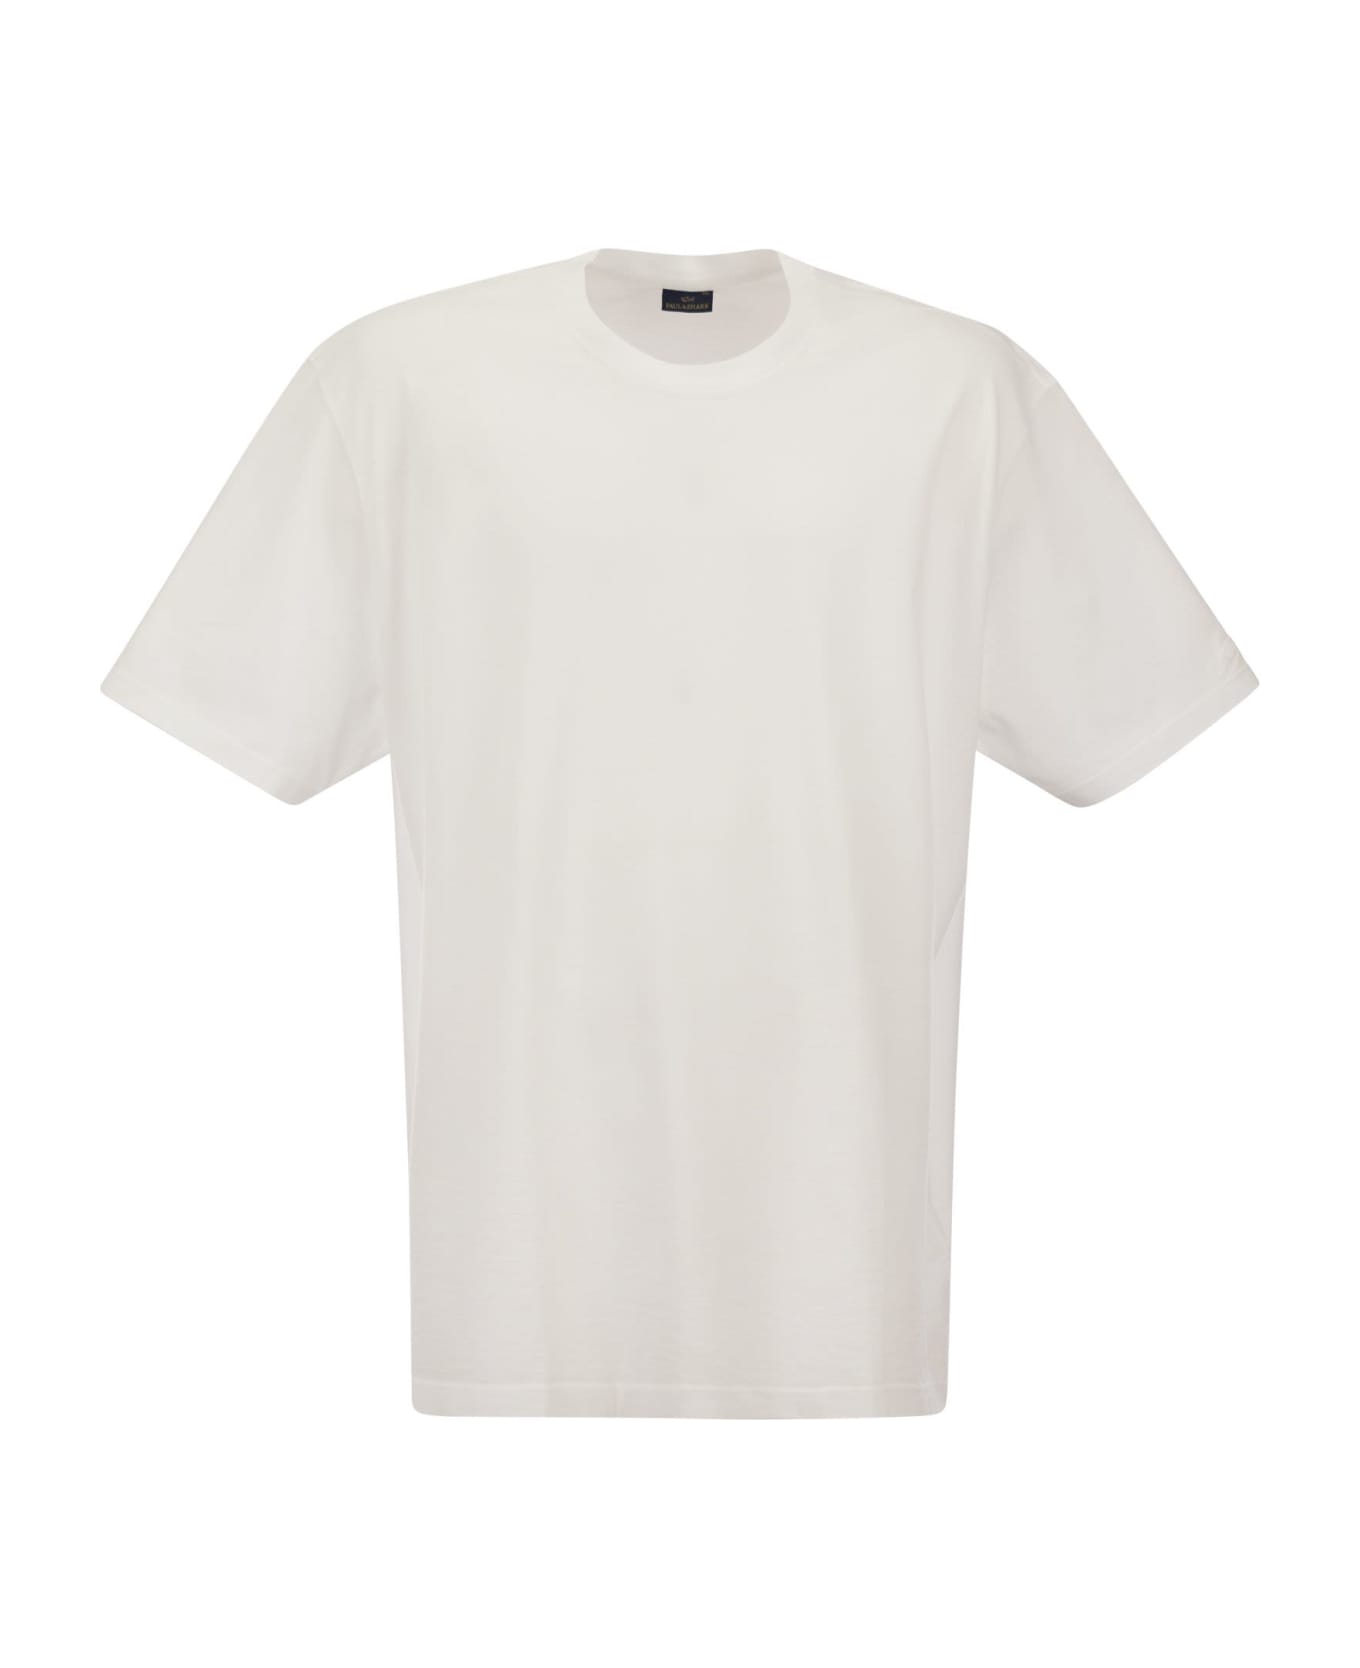 Paul&Shark Garment Dyed Cotton Jersey T-shirt - White